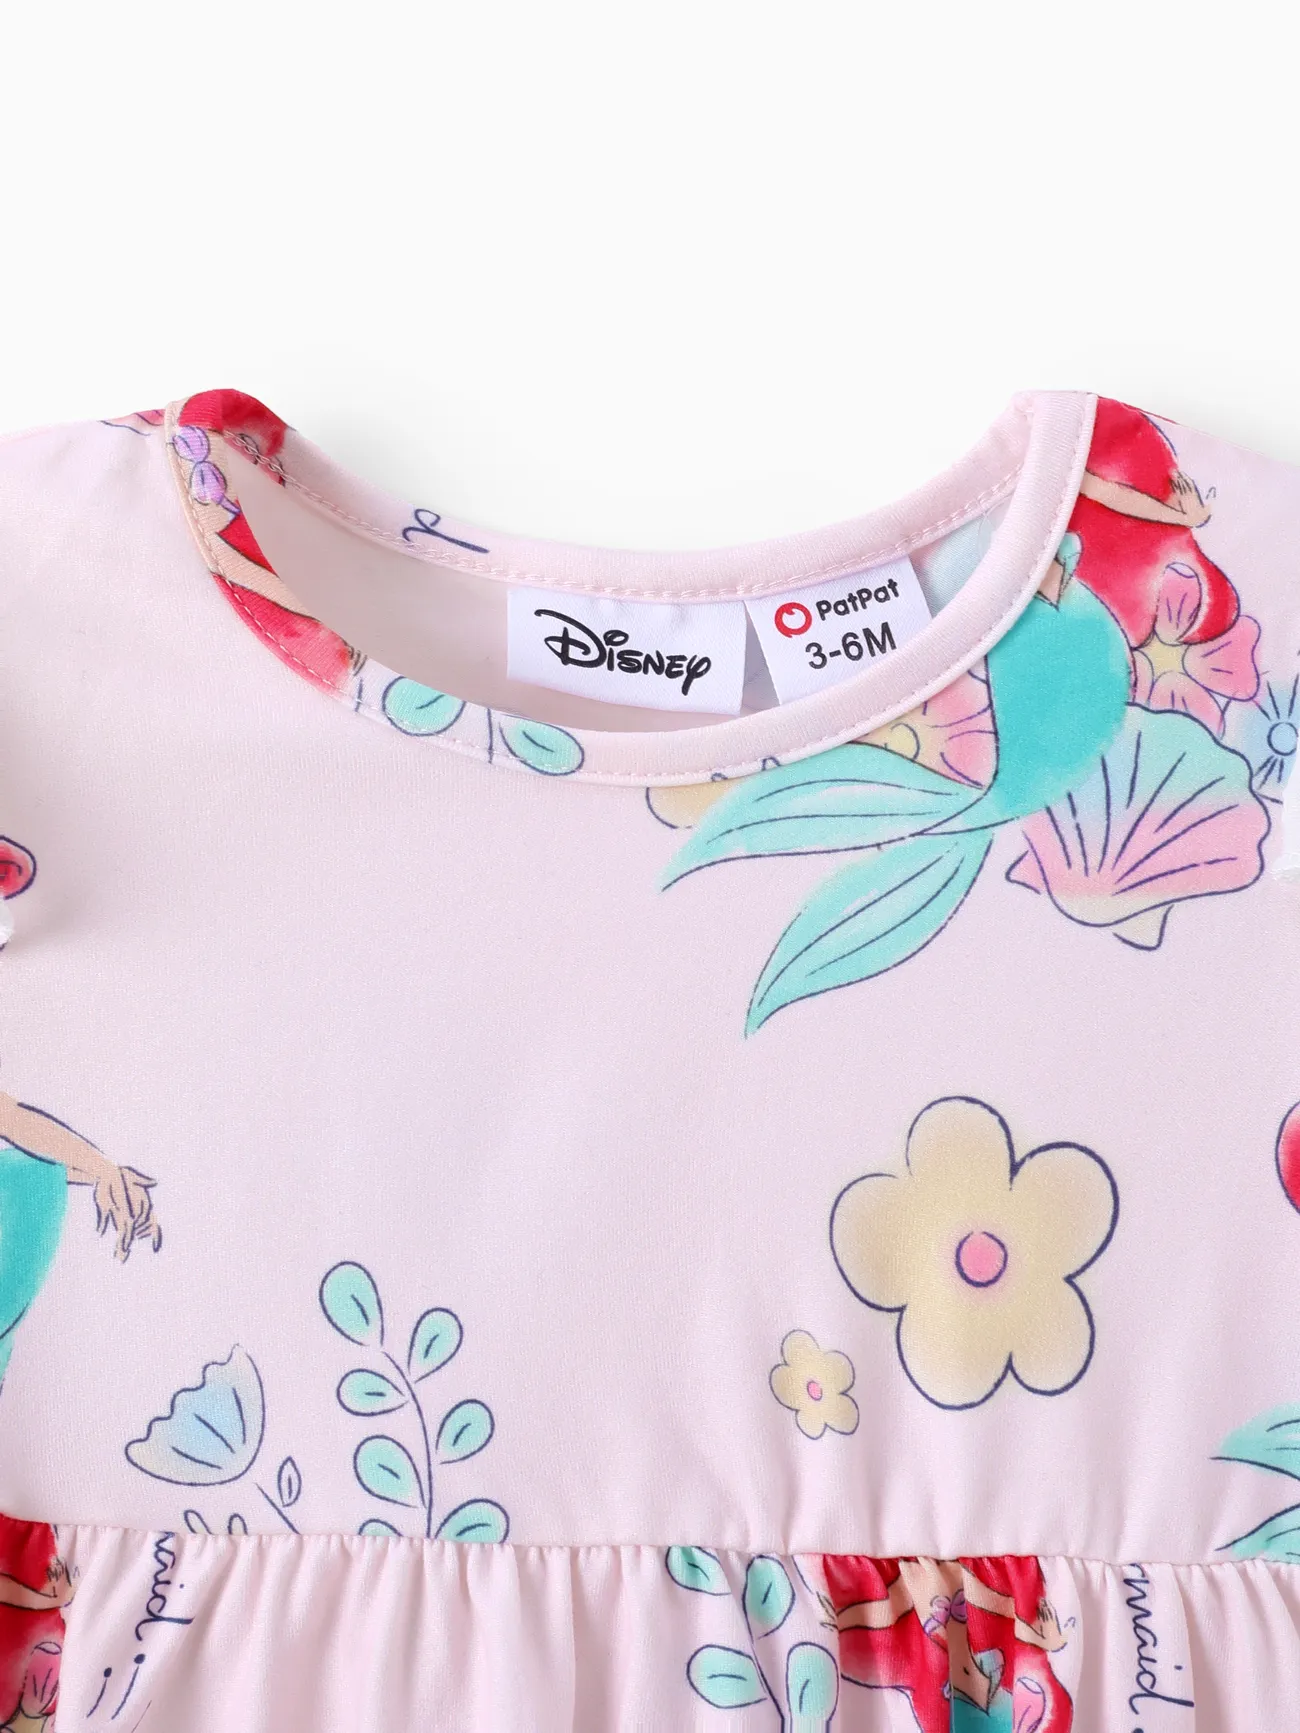 Disney Princess Baby Girl Floral & Character Print Ruffled Long-sleeve Dress  Pink big image 1